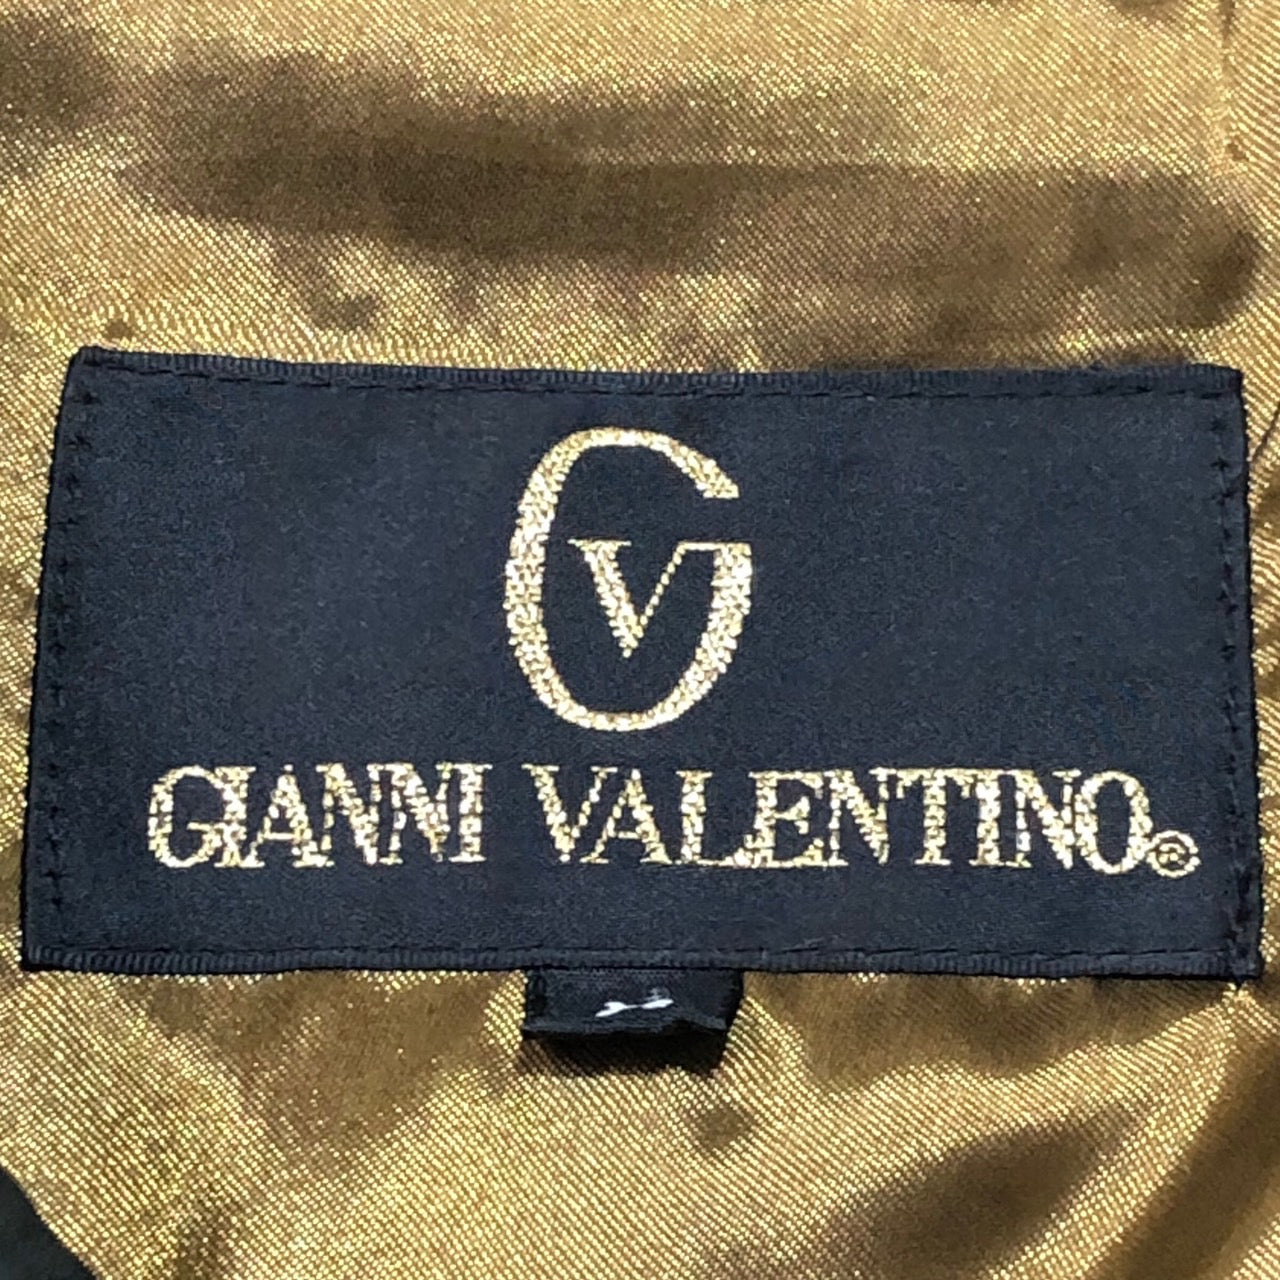 GIANNI VALENTINO(ジャンバレンティノ) 90's ロゴナイナーレザーコート 